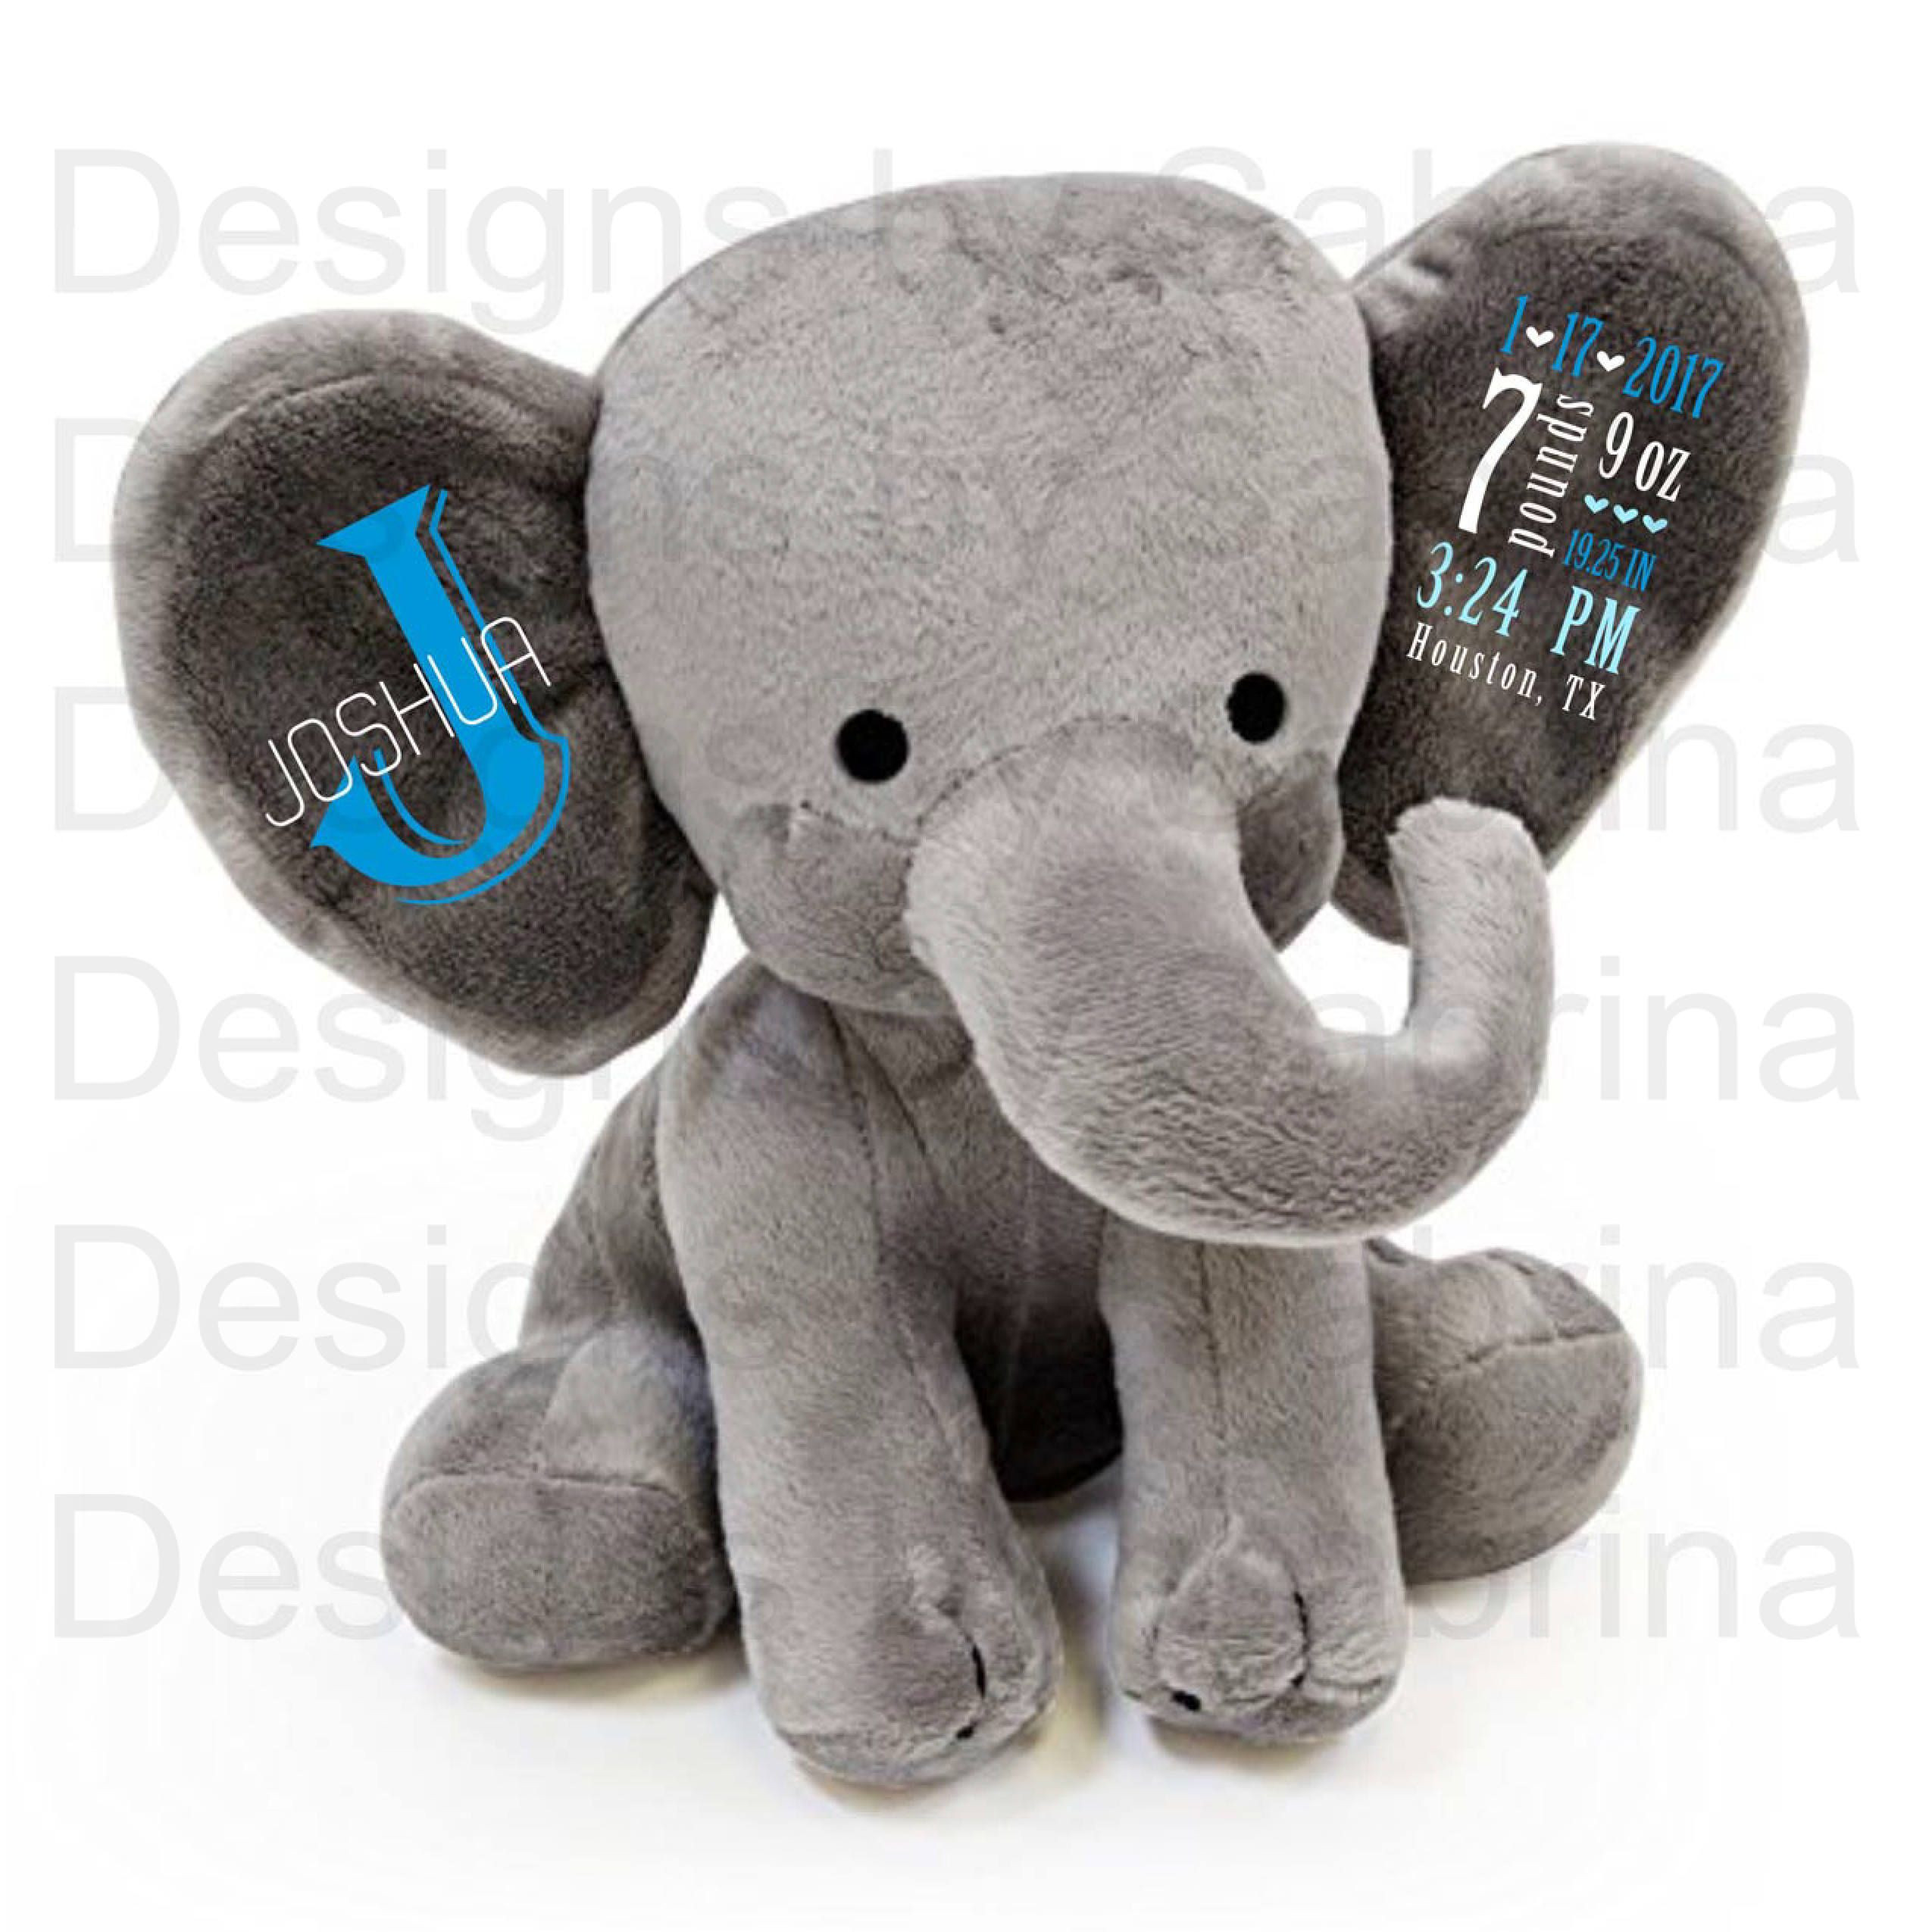 Elephant Baby Gift Ideas
 PERSONALIZED ELEPHANT Personalized Baby Gift Baby Shower